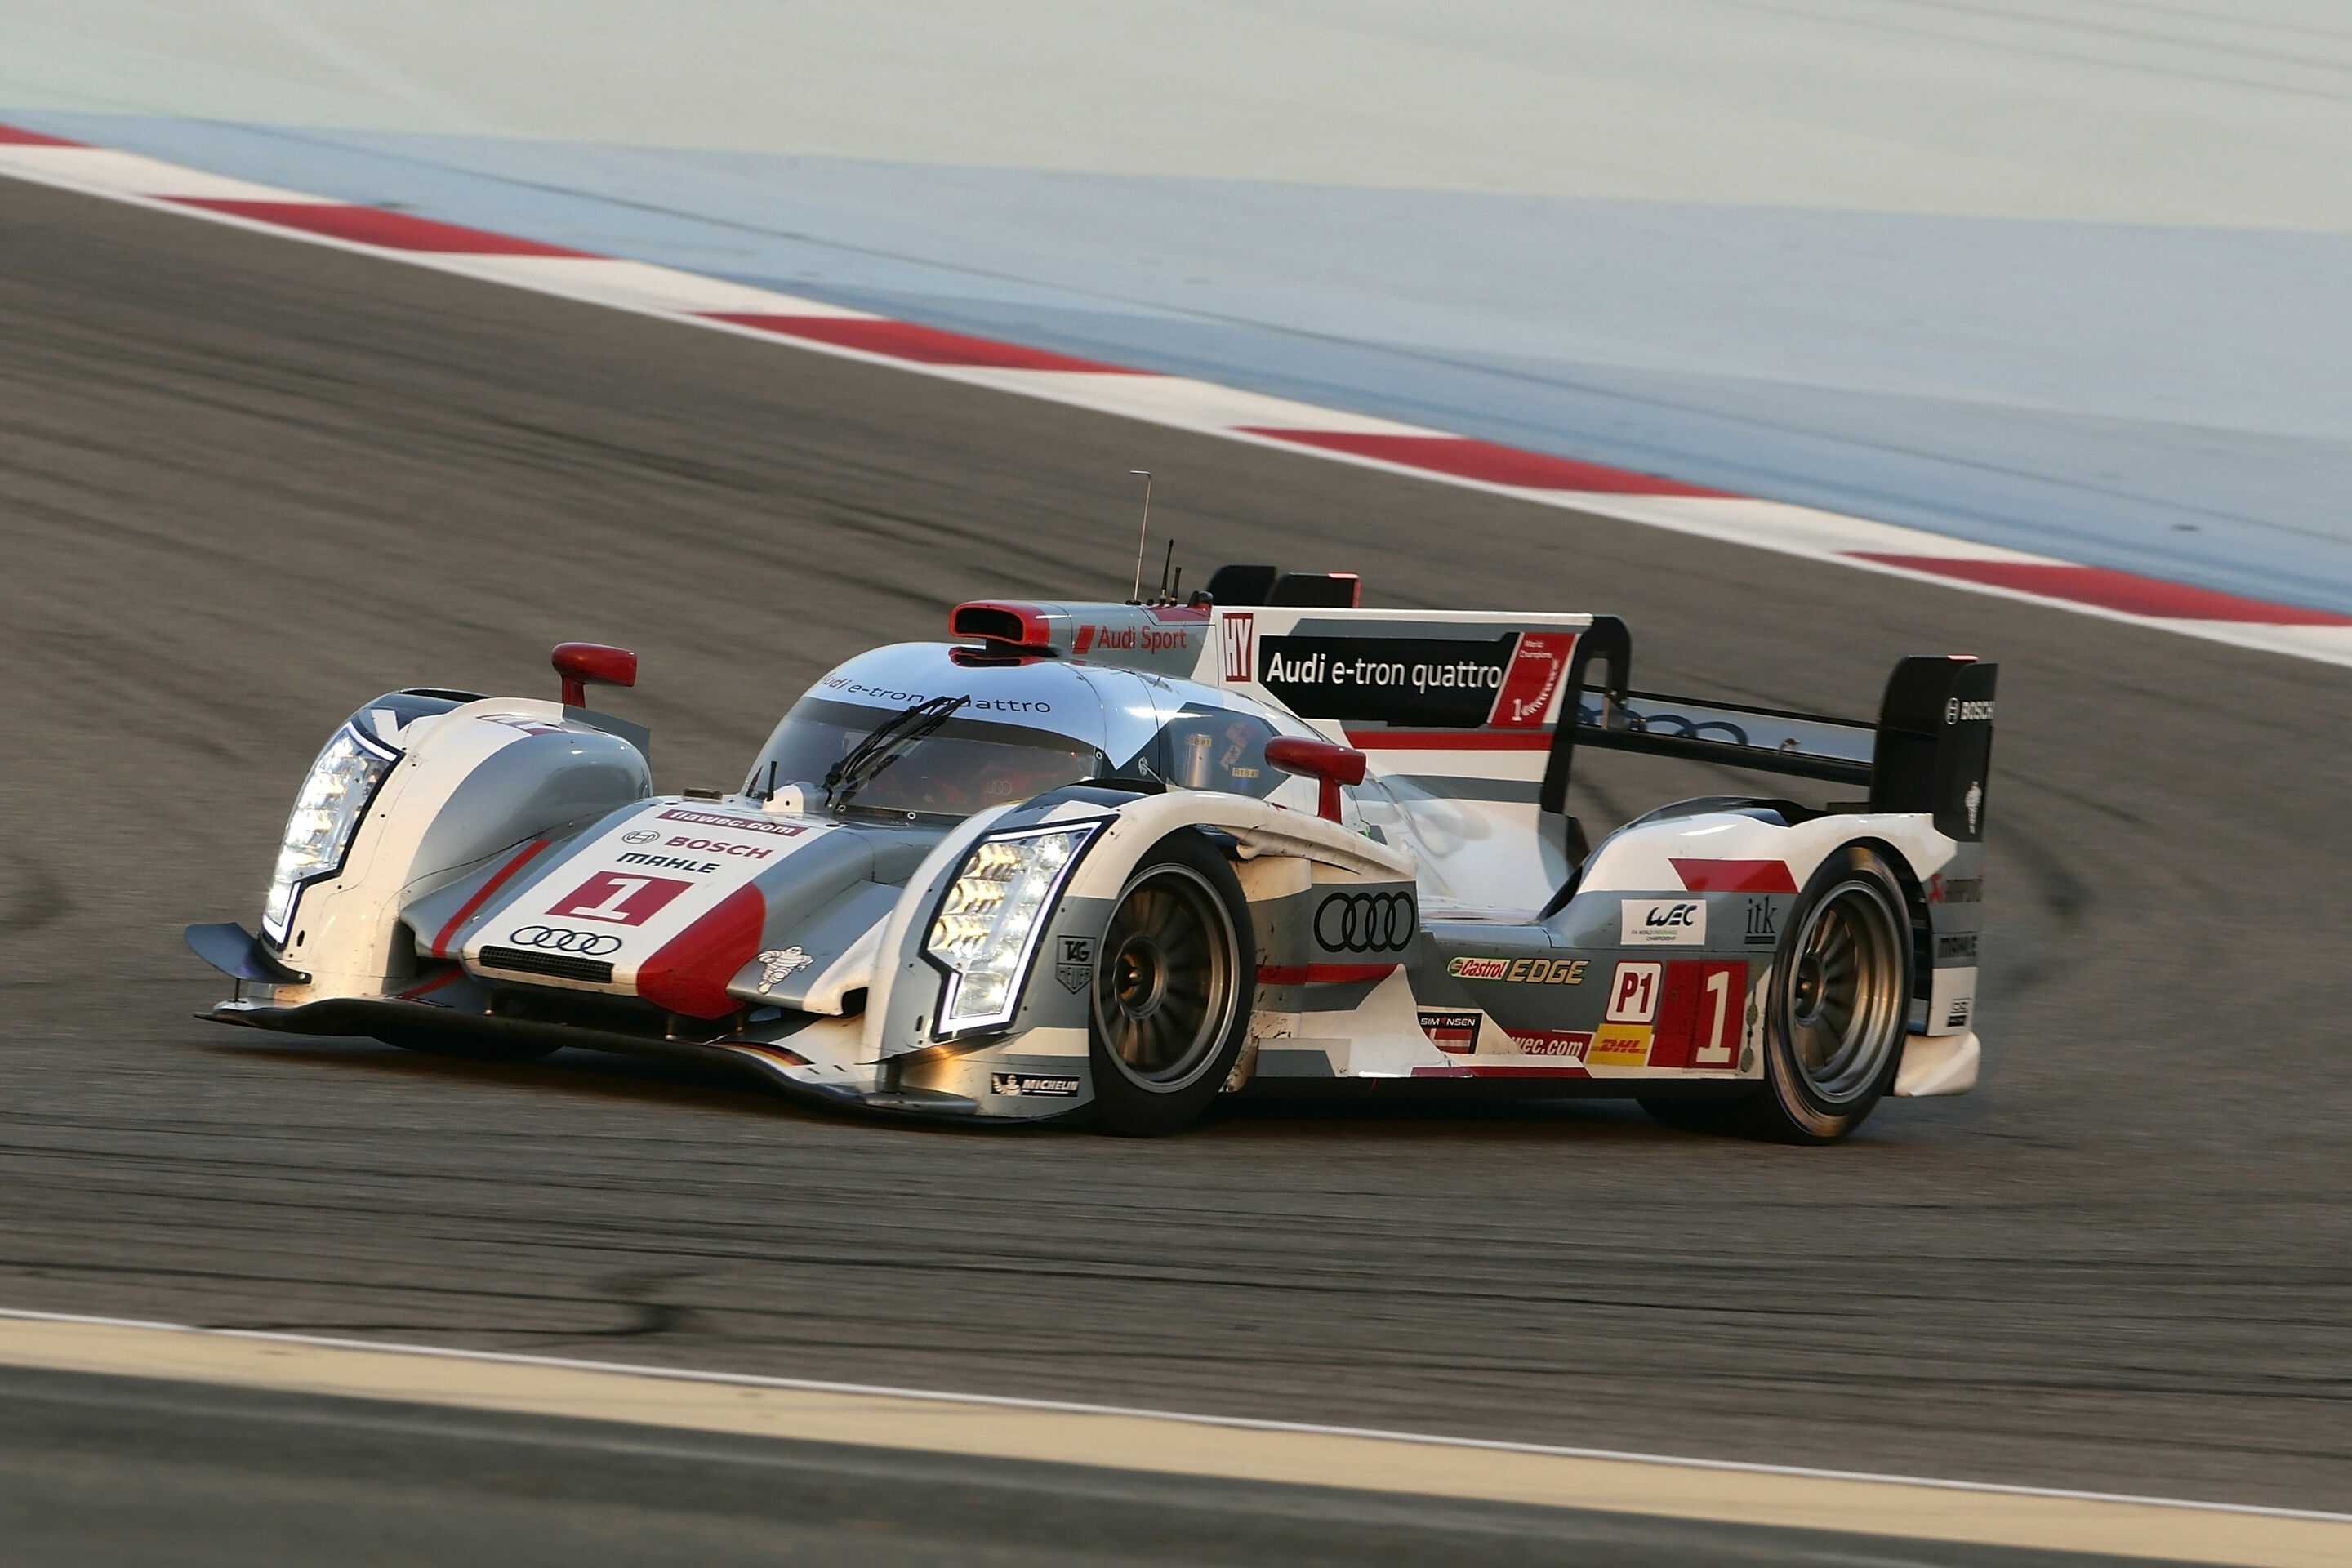 Audi startet in Bahrain aus Reihe zwei